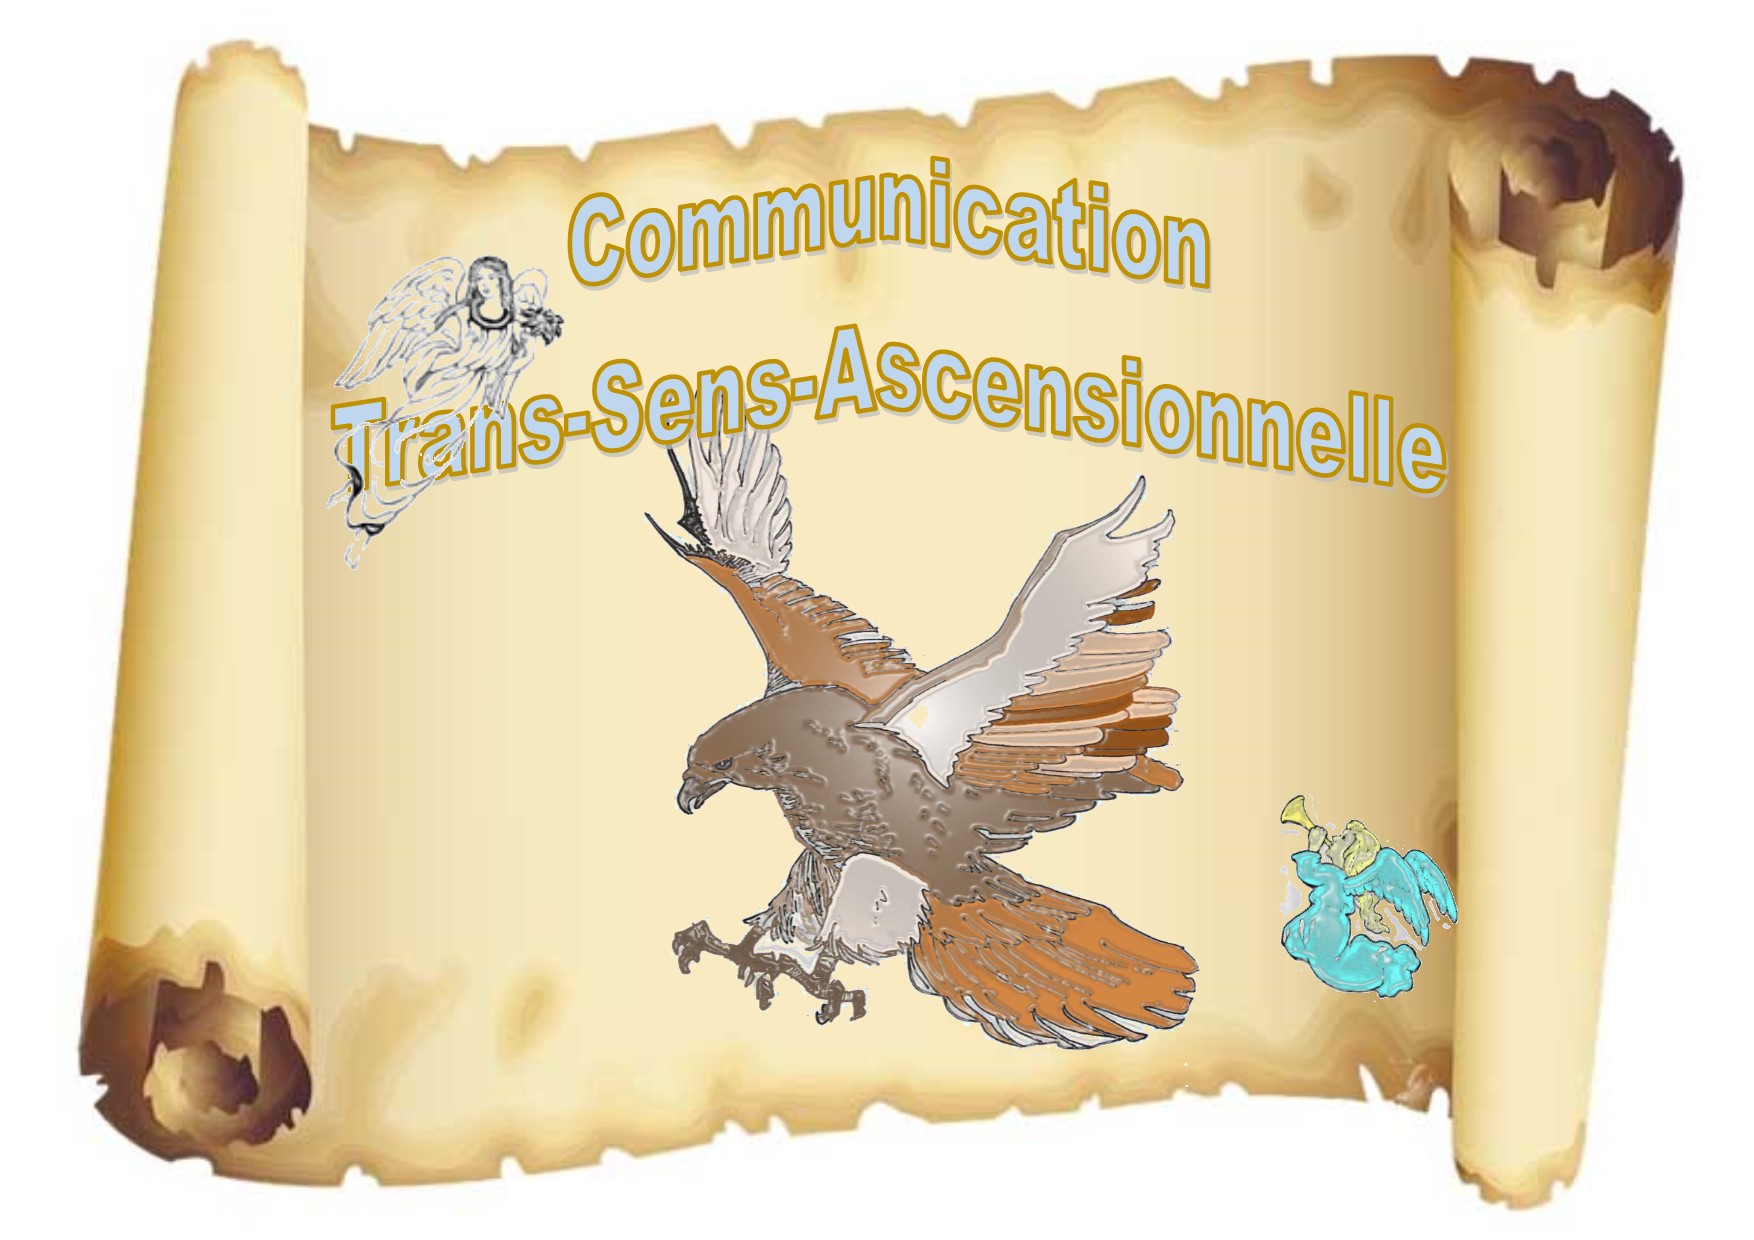 Stage d'initiation, Communication Trans-Sens-Ascensionnelle